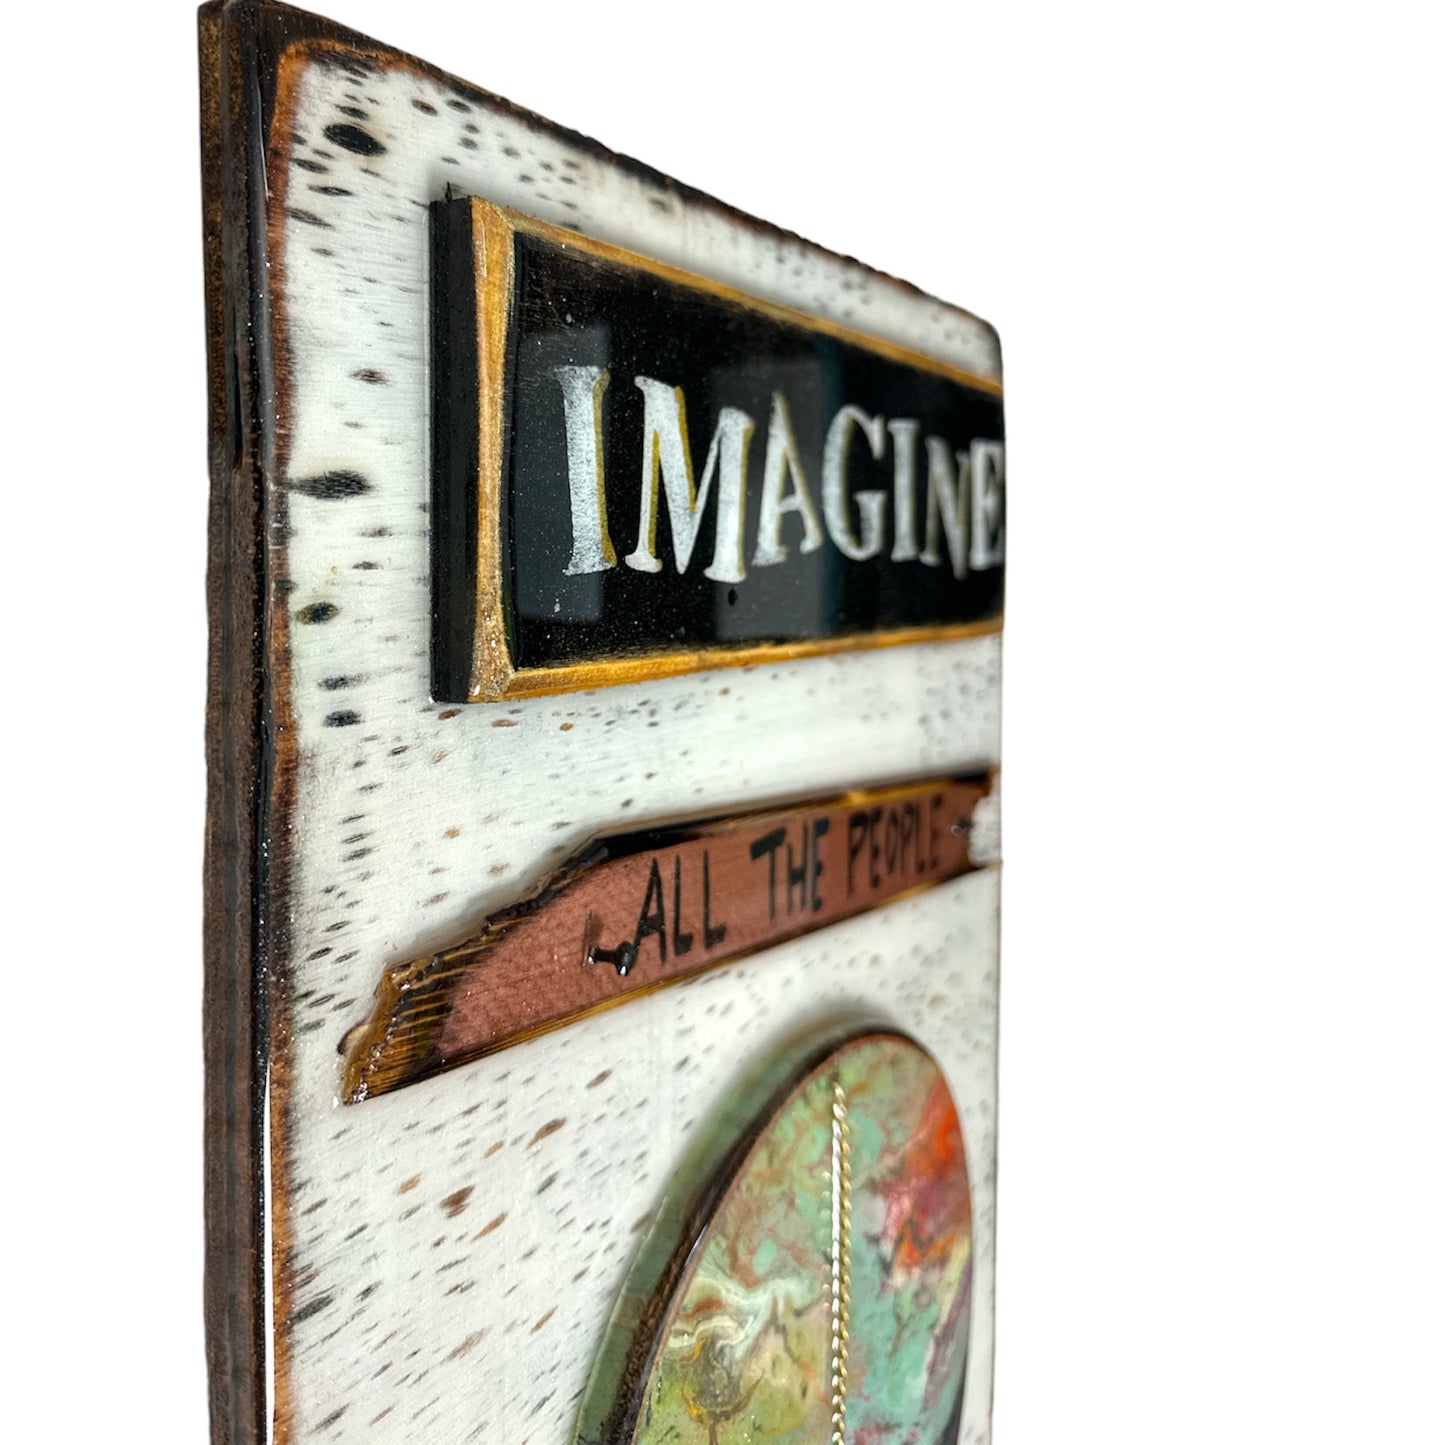 Imagine (14"x22")